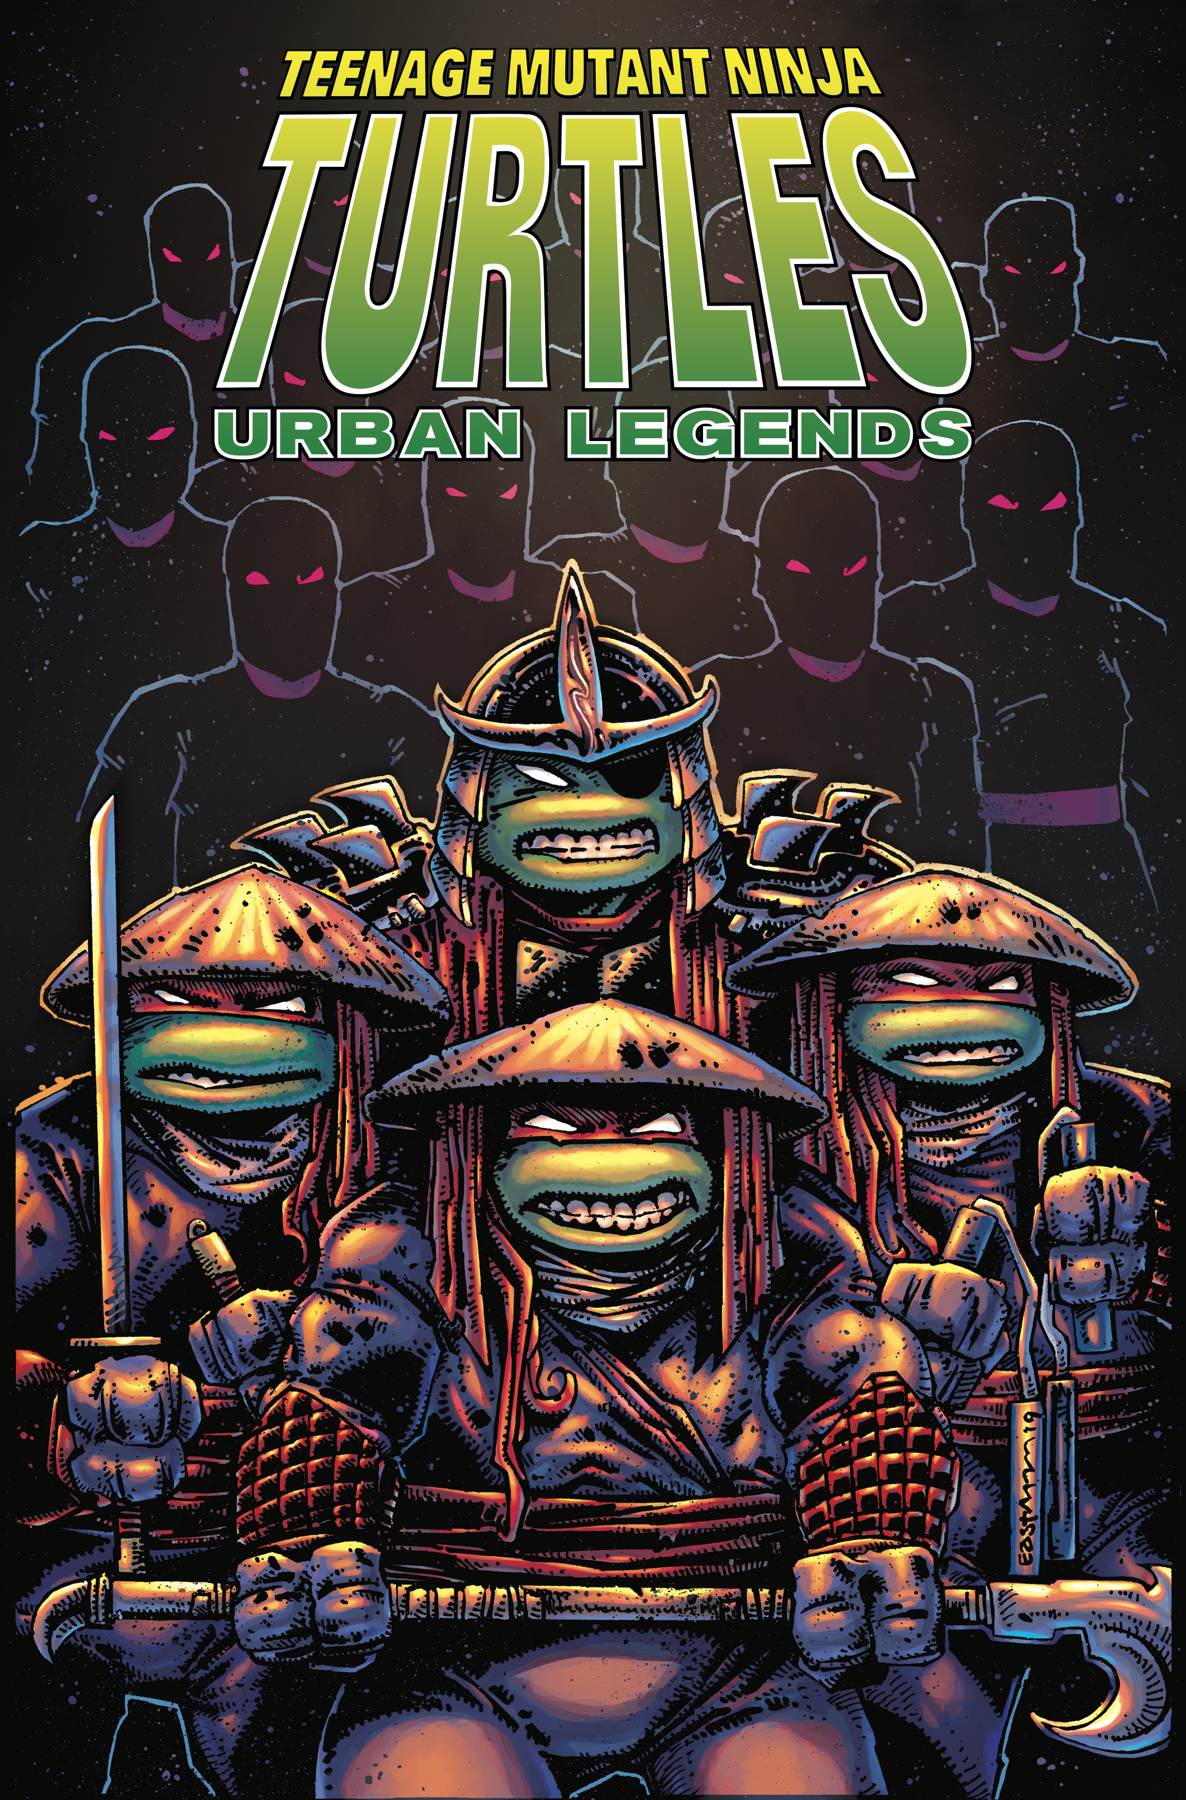 Teenage Mutant Ninja Turtles Urban Legends Graphic Novel Volume 2